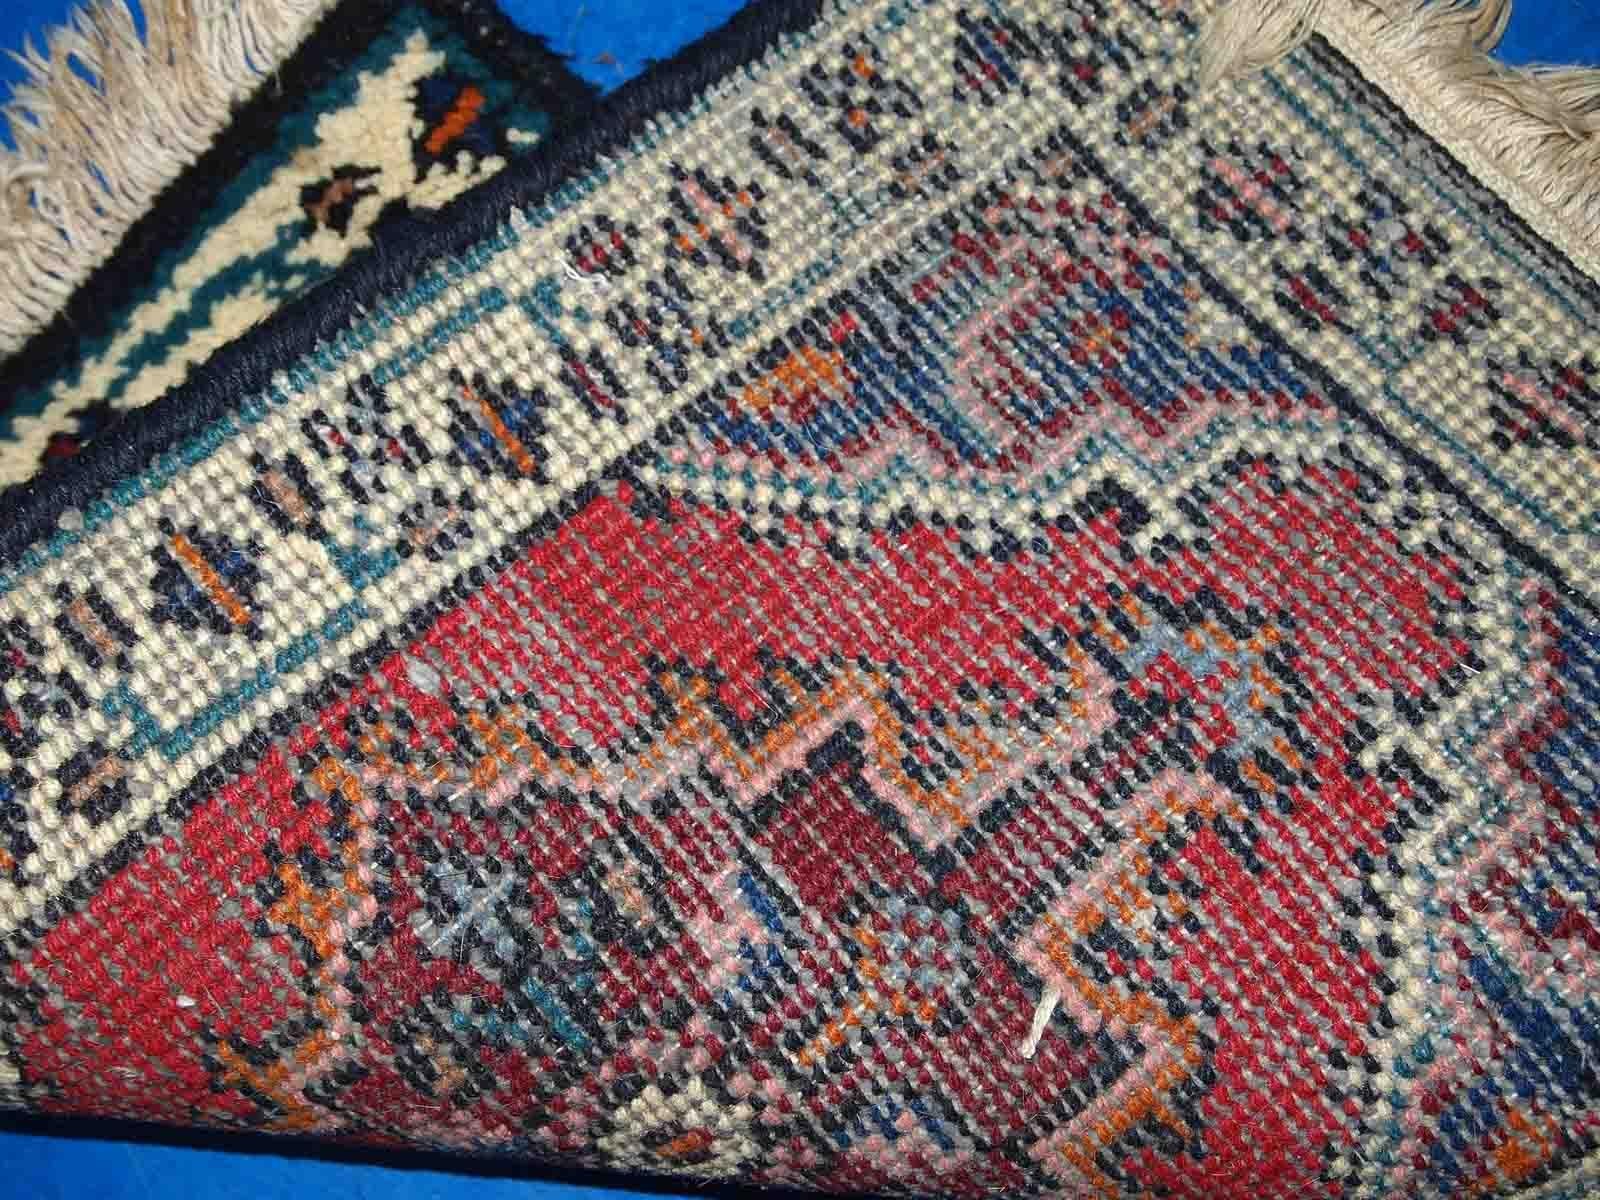 Handgefertigte Matte aus dem Nahen Osten in gutem Originalzustand. Der Teppich stammt aus dem Ende des 20. Jahrhunderts.

-zustand: original gut, 

-etwa: 1970er Jahre,

-größe: 1,3' x 1,9' (40cm x 60cm),

-material: